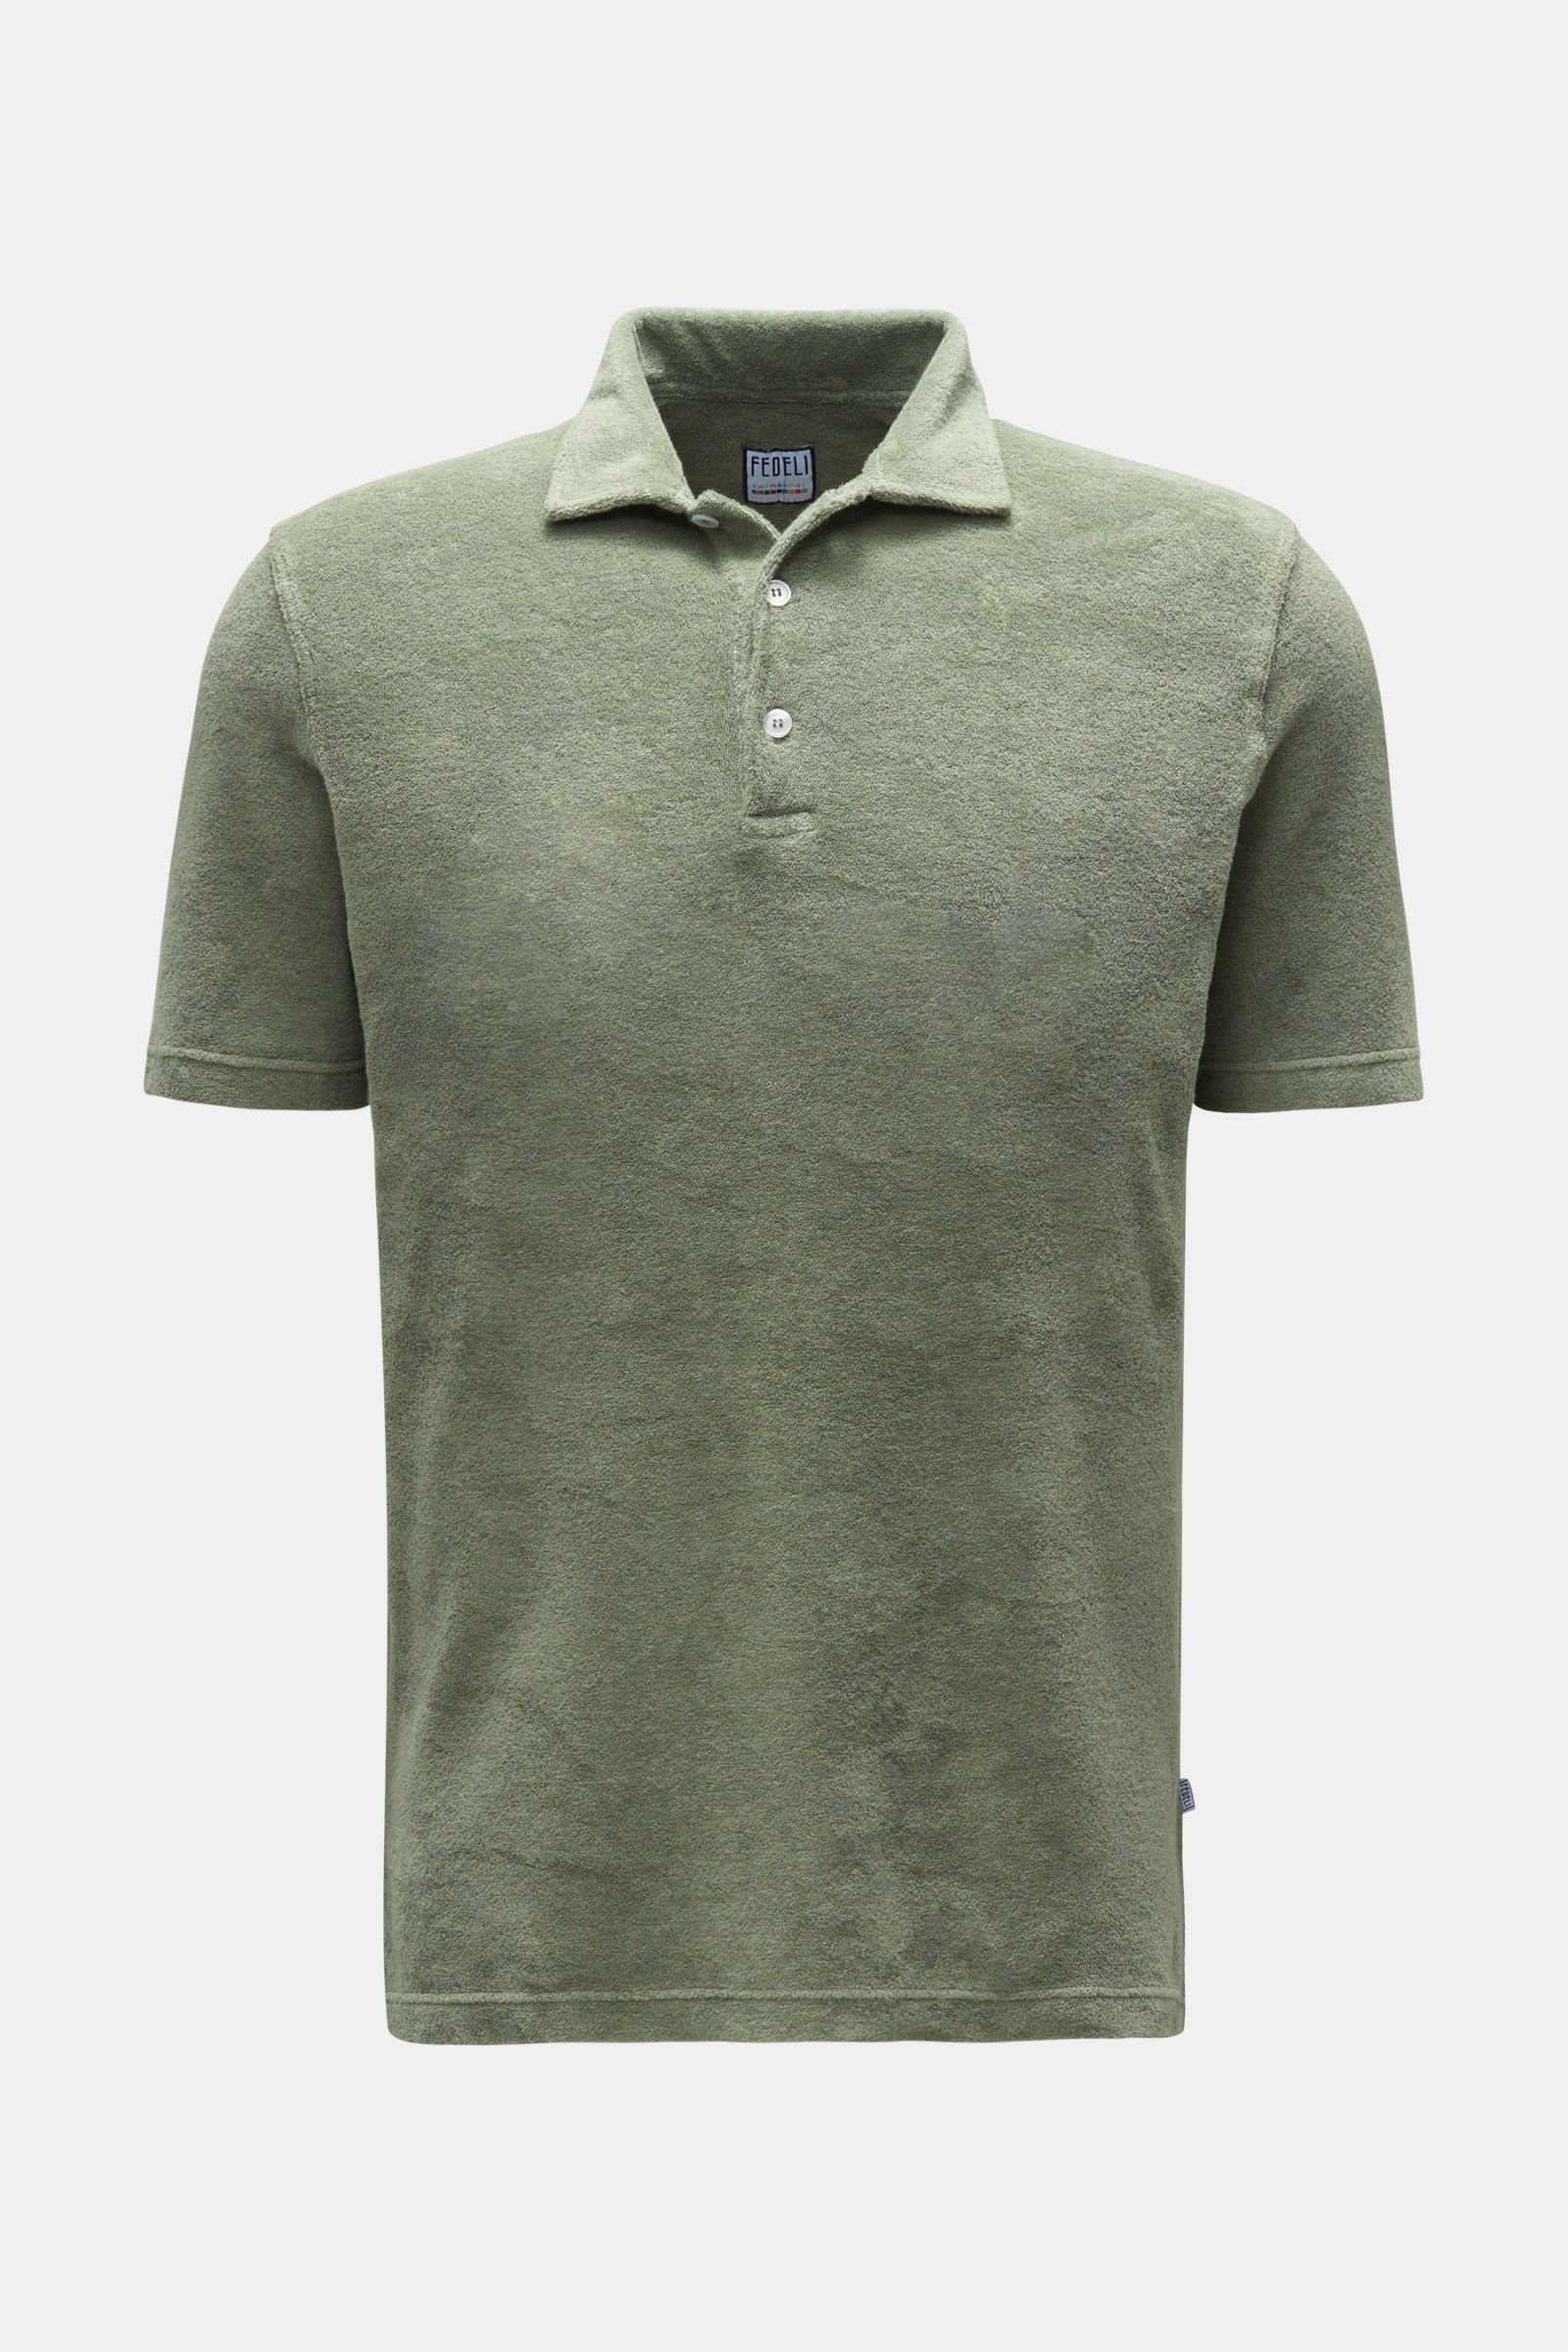 Terry polo shirt 'Terry Mondial' grey-green